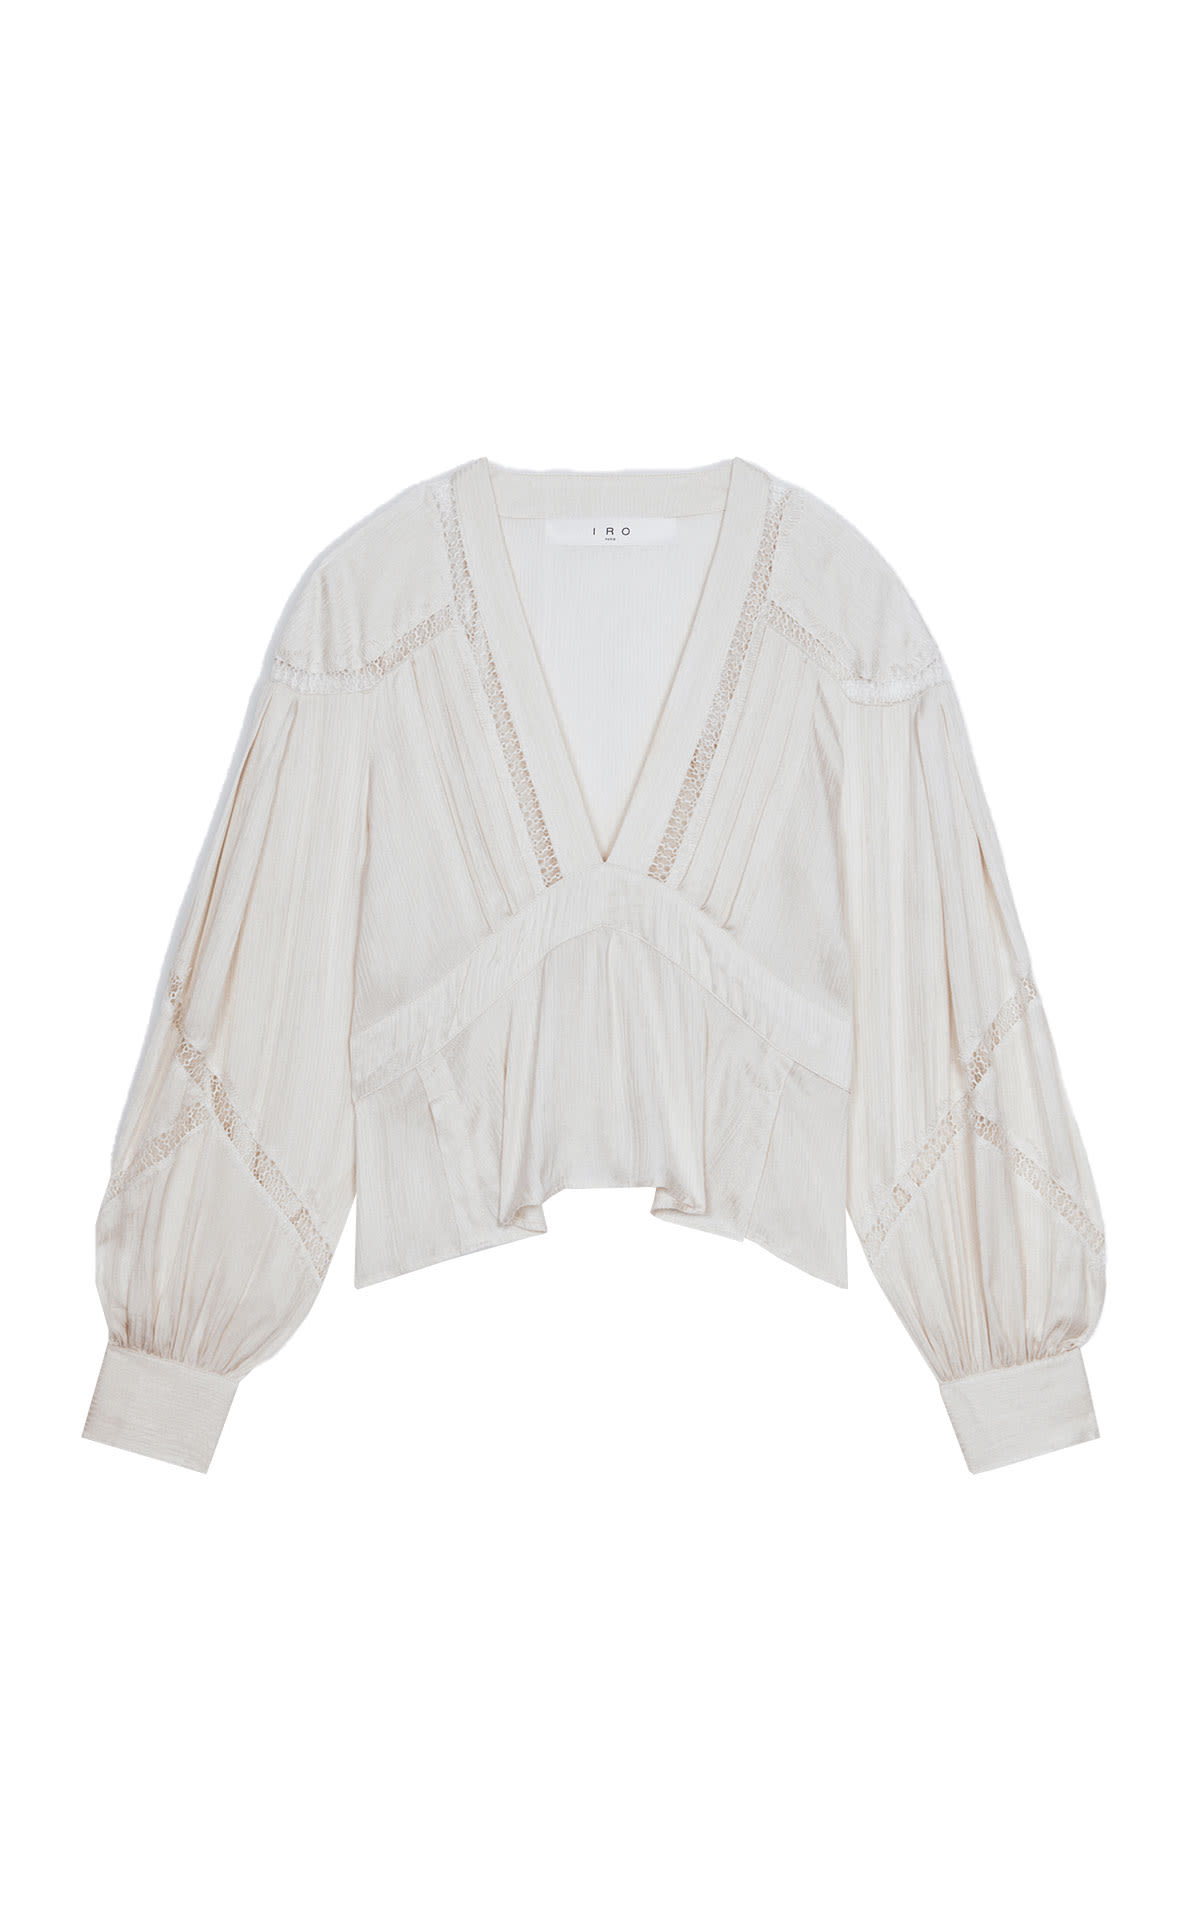 A white blouse IRO Paris